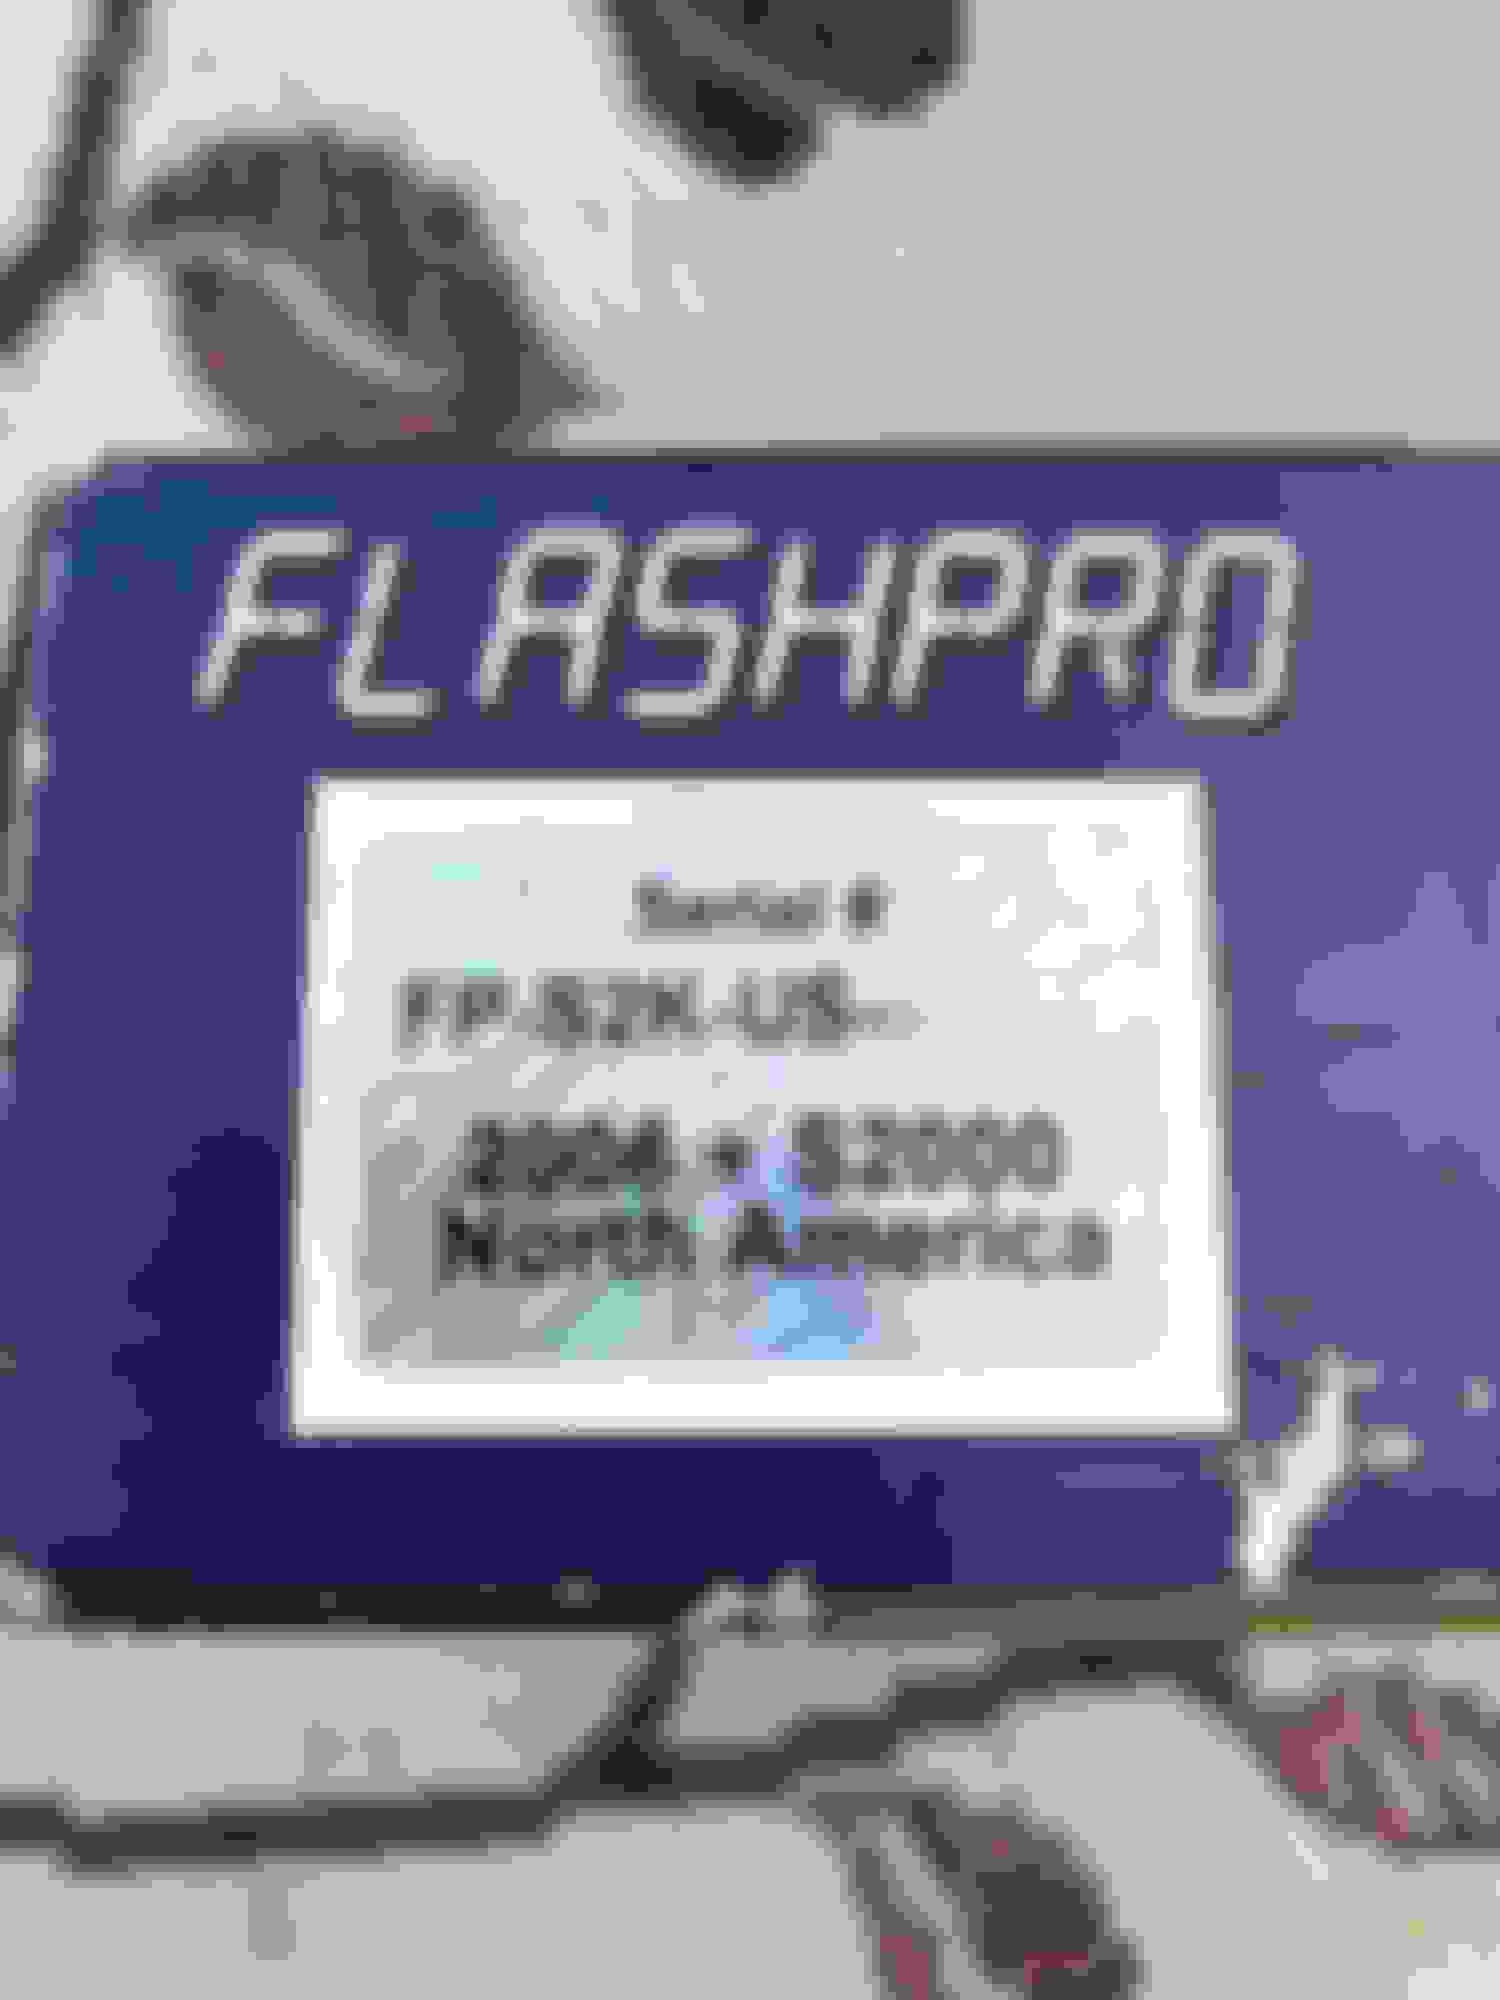 s2000 flashpro etuner